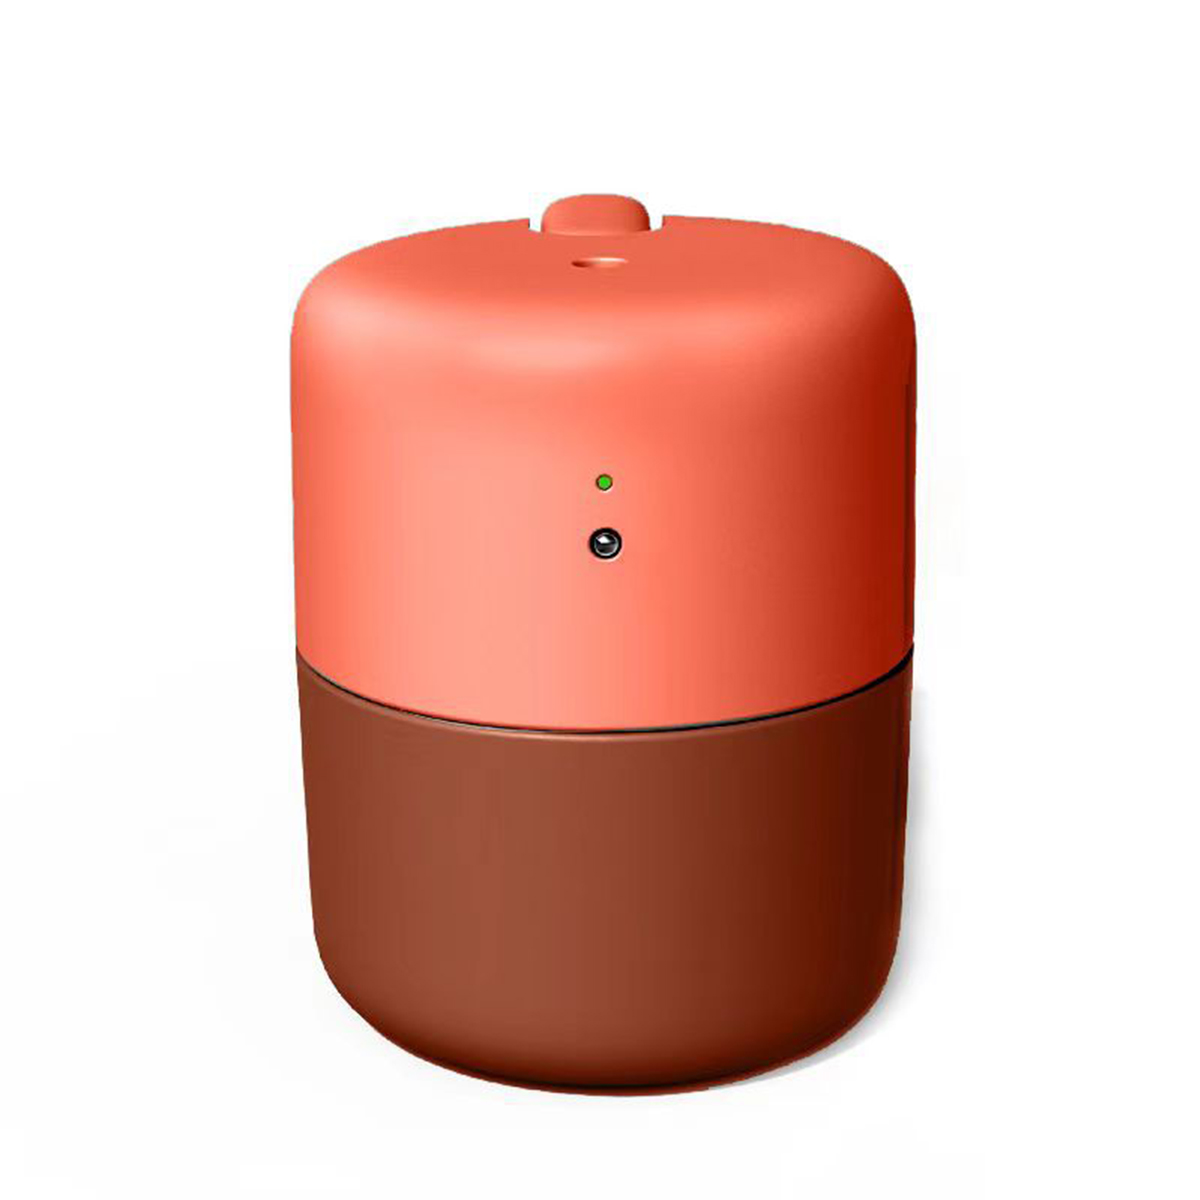 Funktionen - 10 m²) Kapazität (Raumgröße: Luftbefeuchter - Große Leiser Desktop SHAOKE Luftbefeuchter Intelligente Rot